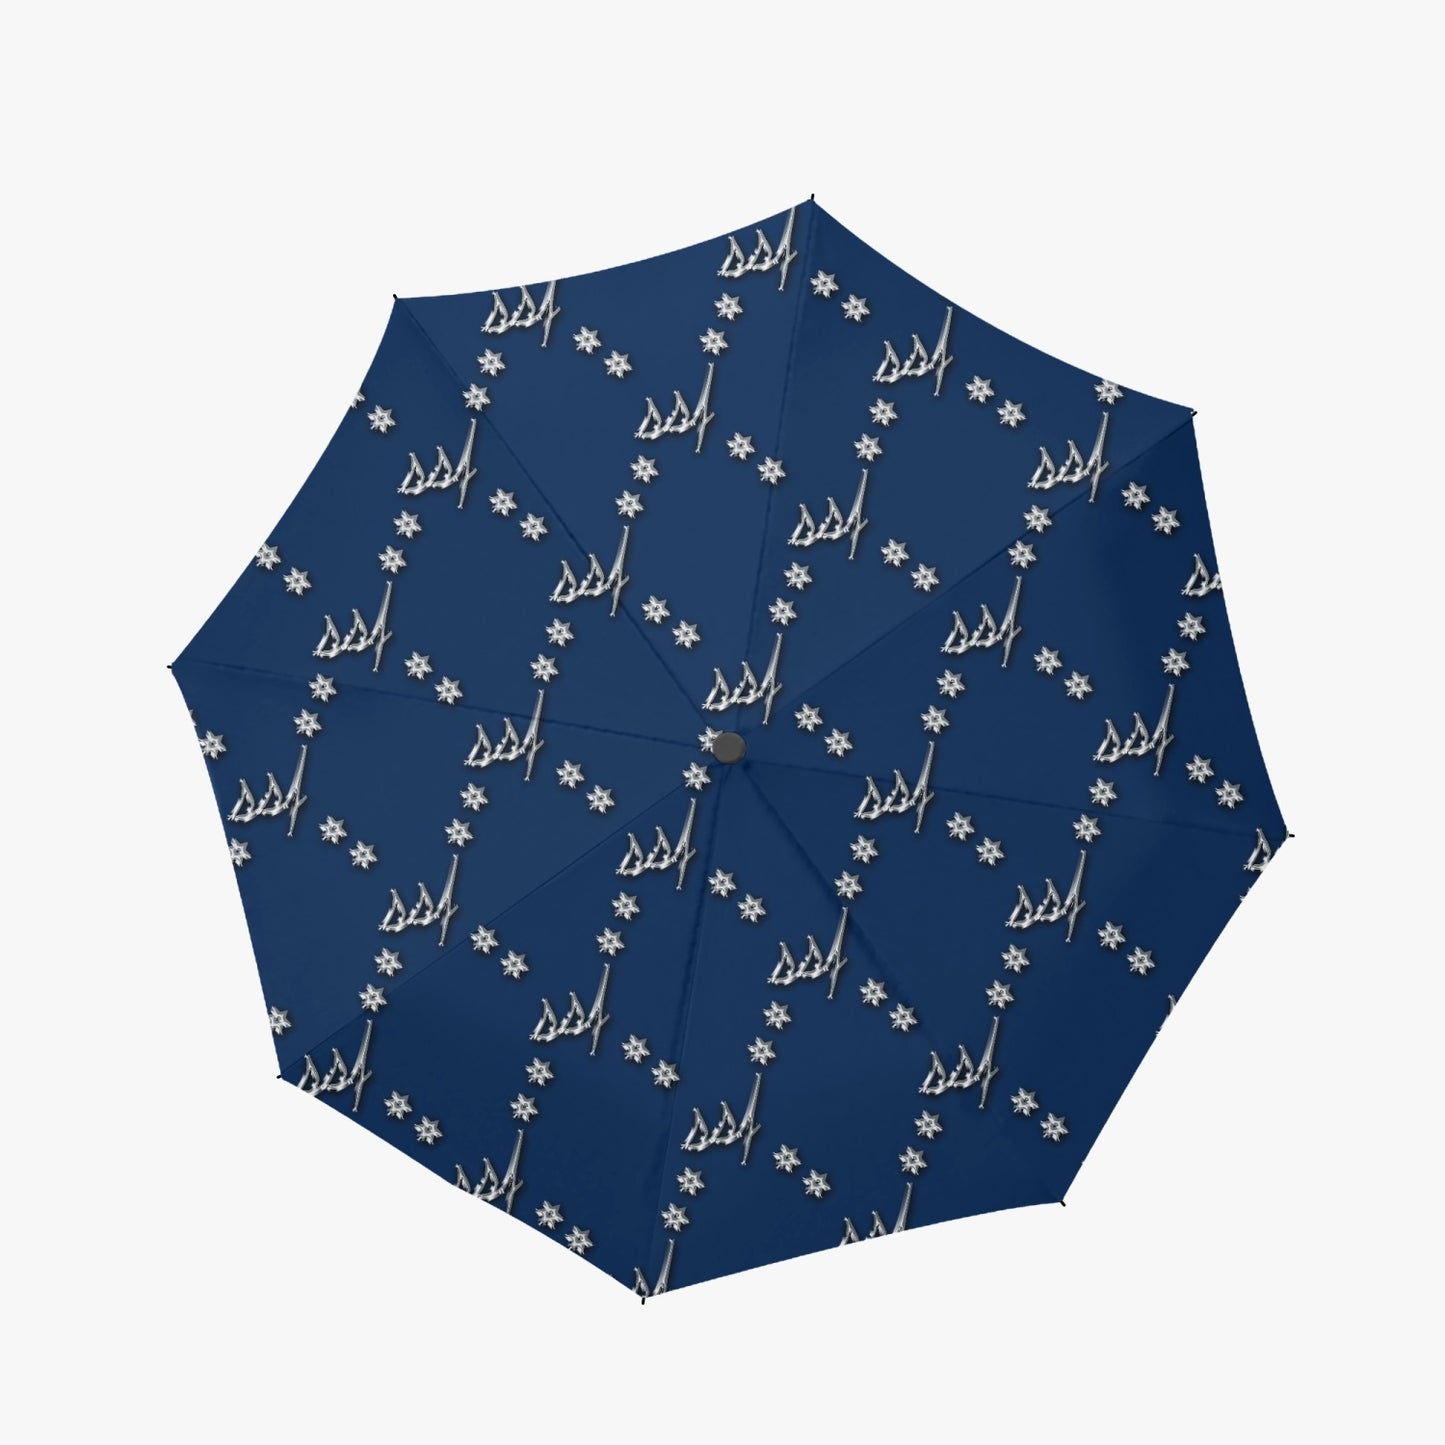 Blue with Chrome Umbrella